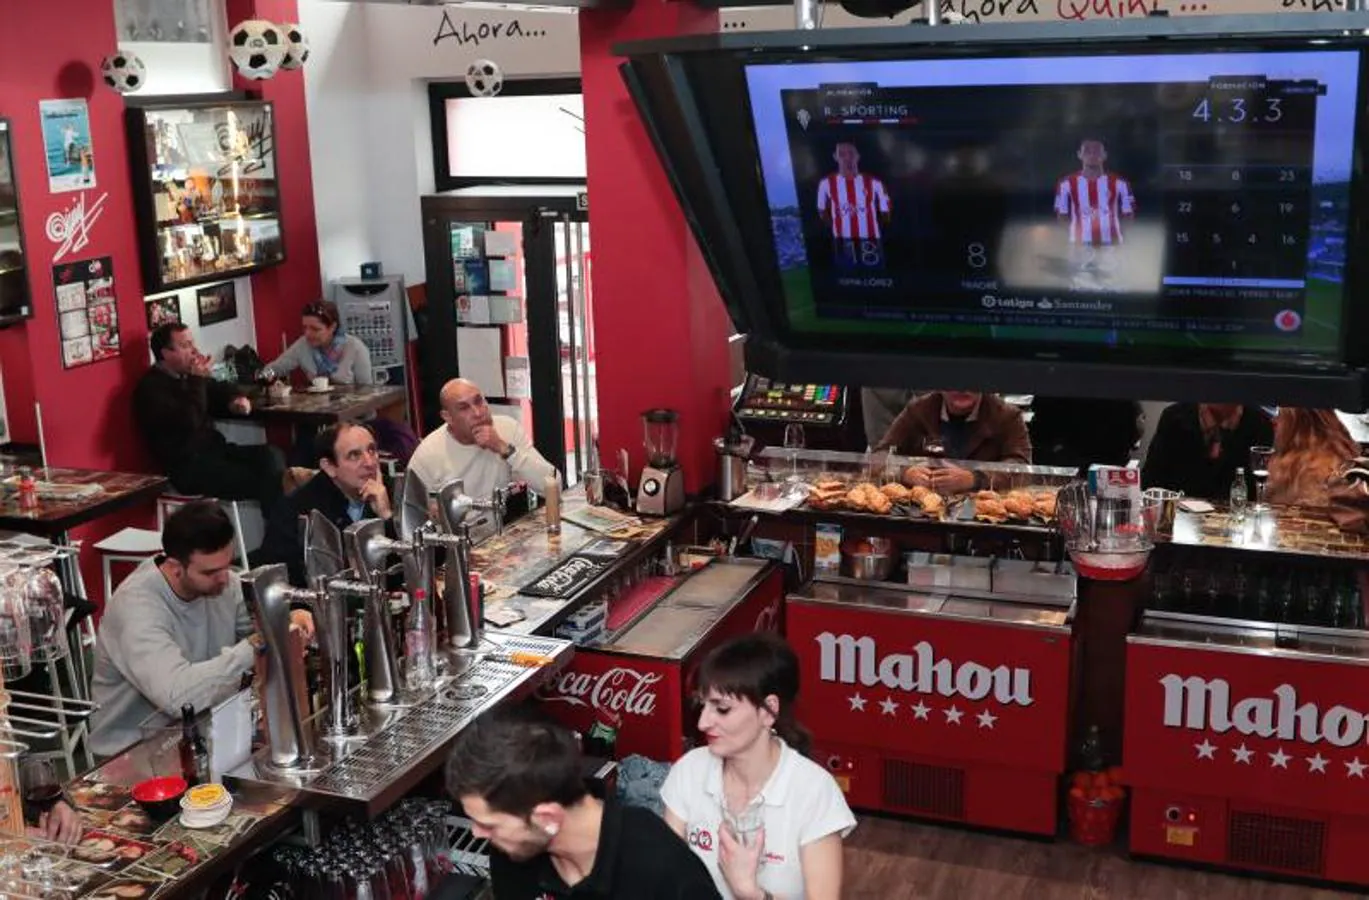 ¿Estuviste apoyando al Sporting contra el Leganés? ¡Búscate en la Mareona!